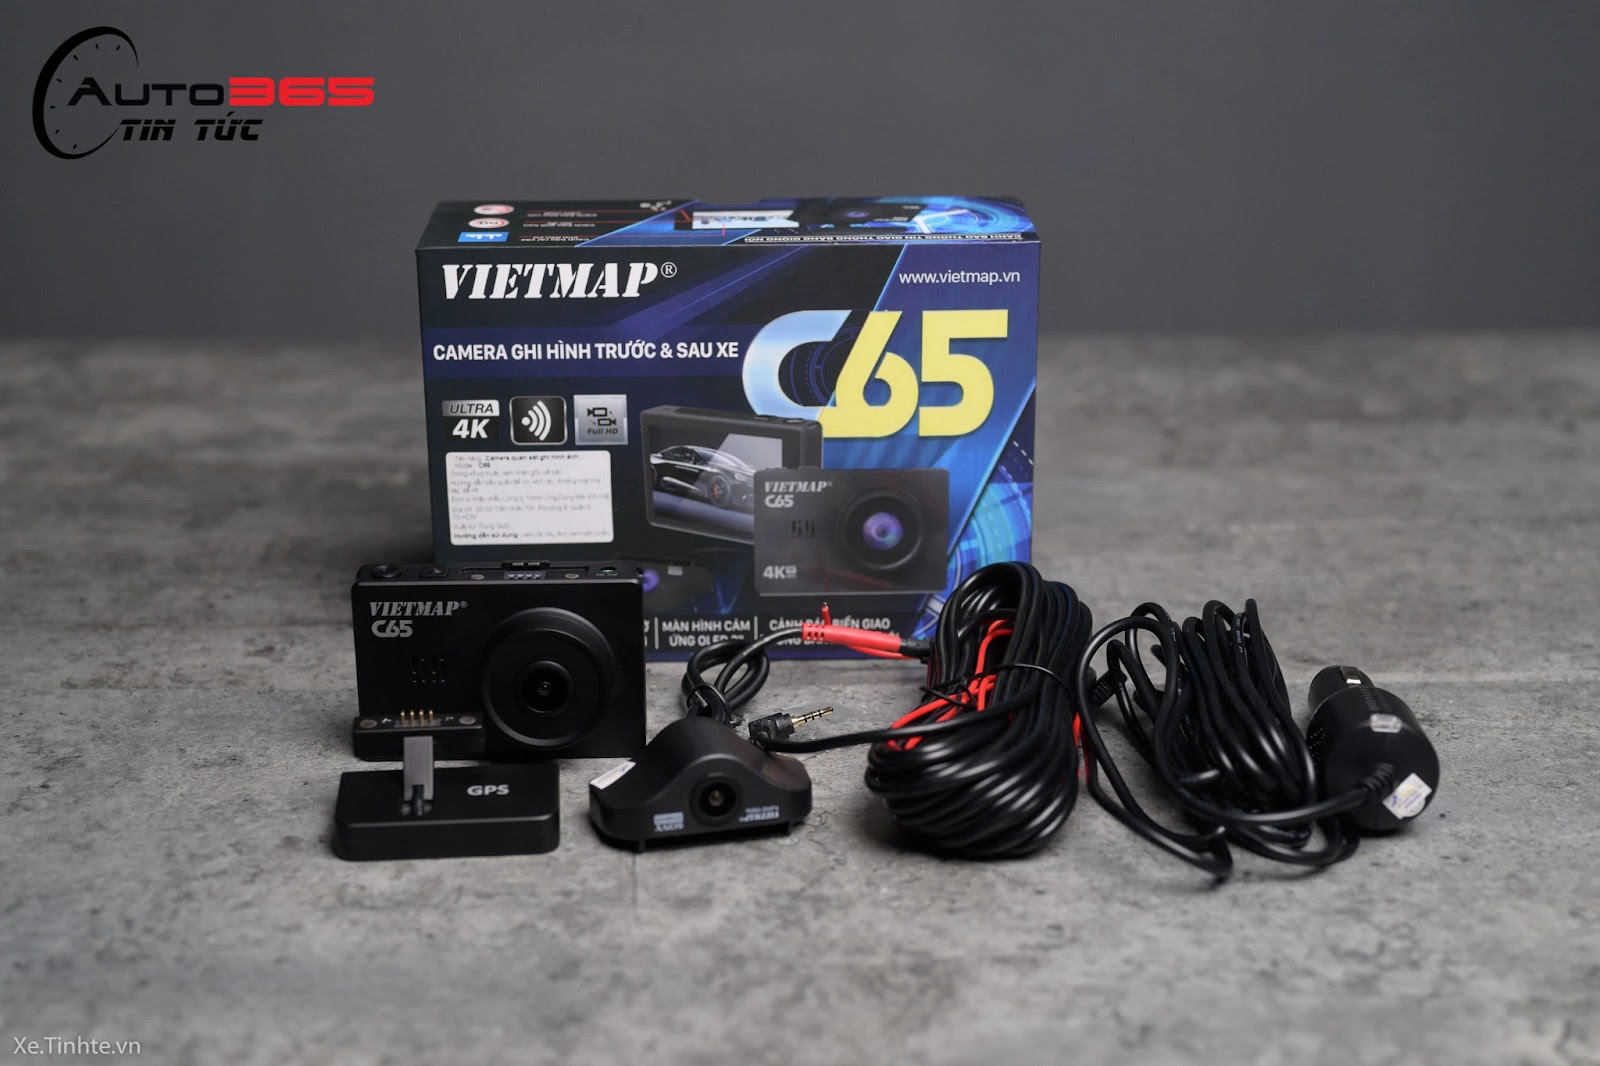 Camera hành trình Vietmap C65 - 4,29 triệu đồng